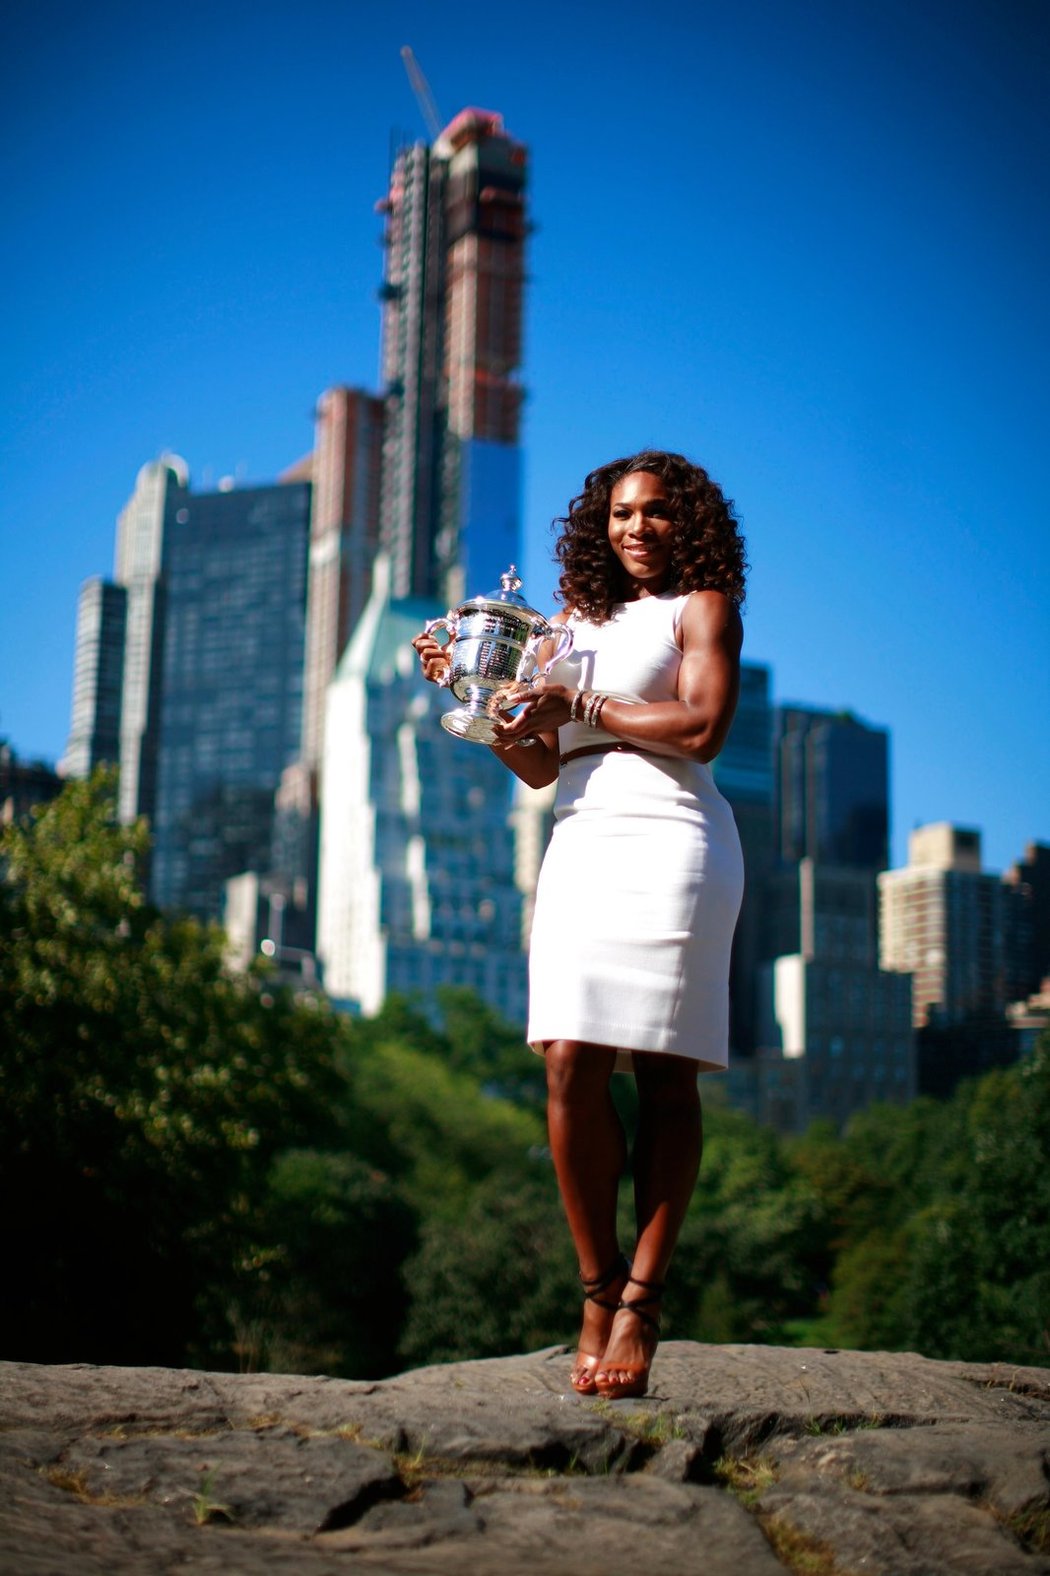 Serena Williamsová ovládla bílý sport. A teď ovládne stránky časopisů svými bílými šaty